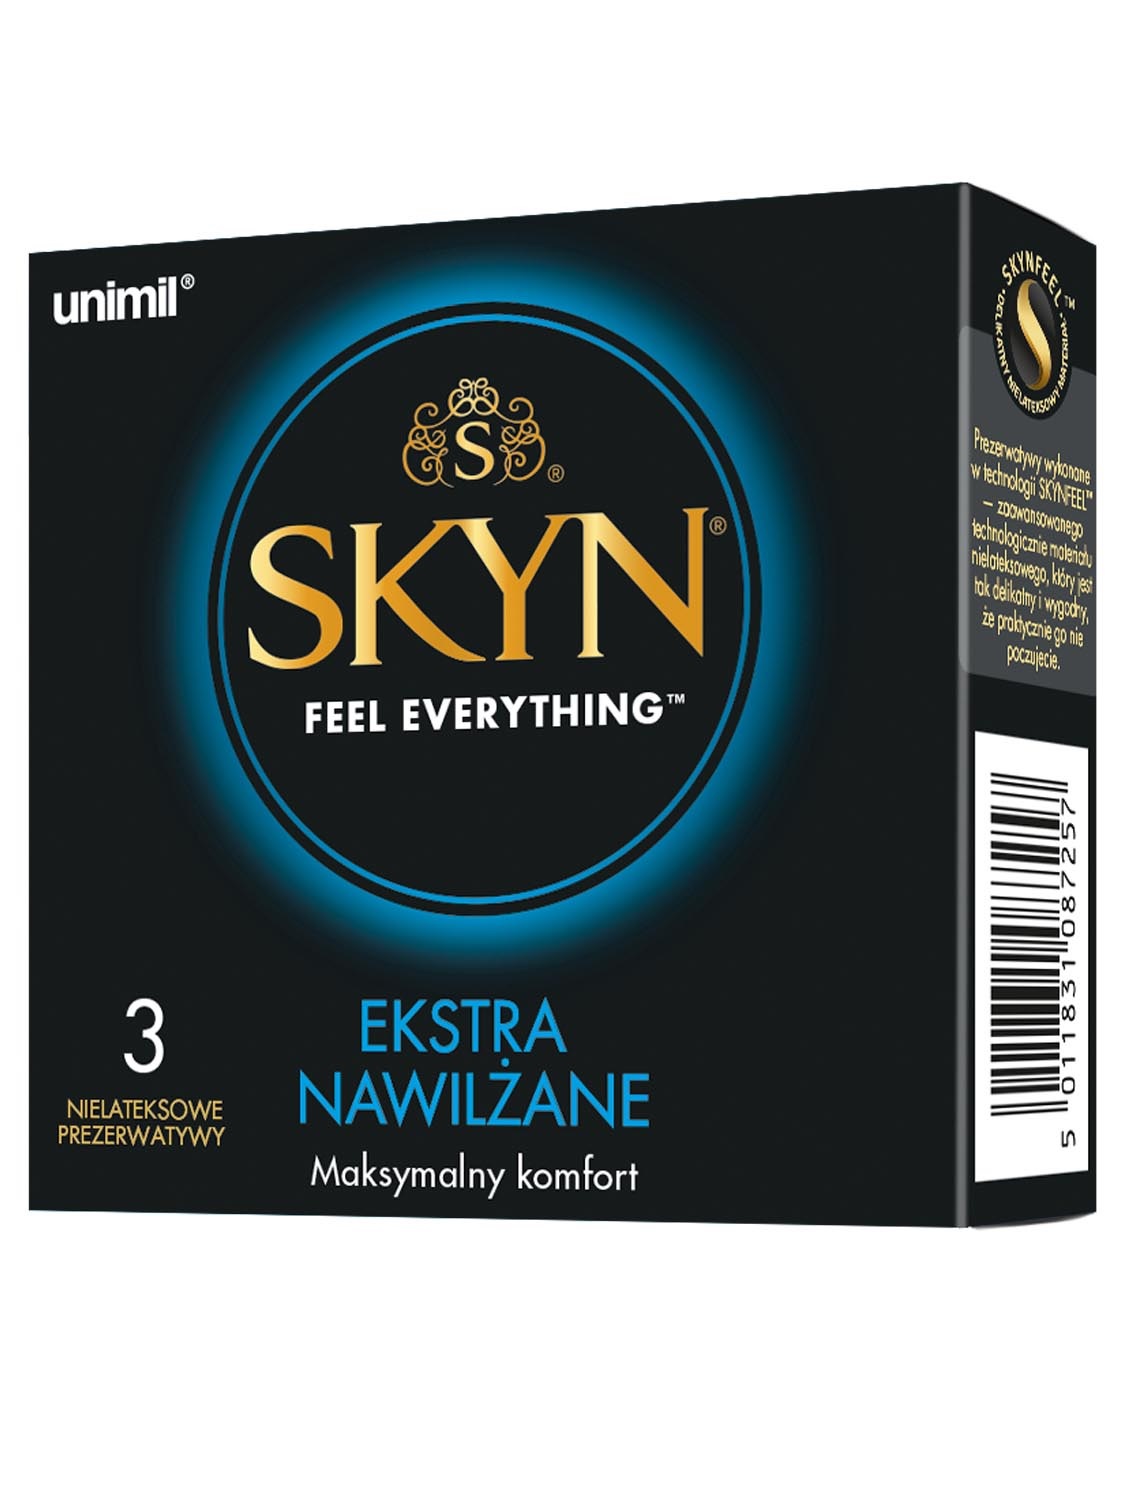 SKYN ® to rewolucyjne prezerwatywy wyprodukowane z naukowo opracowanego mat...